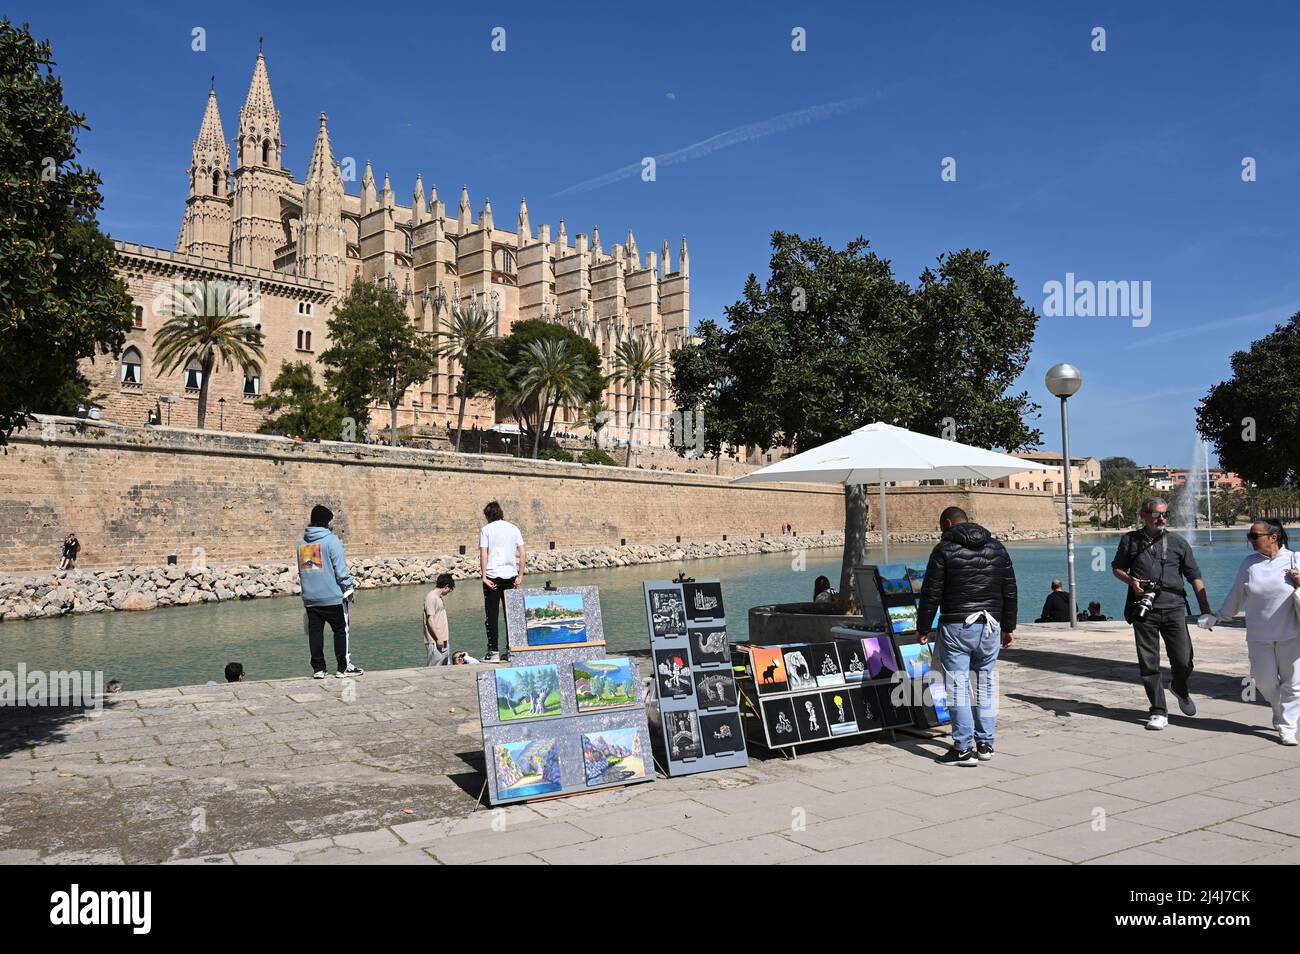 Verkaufsstand in Palma de Mallorca mit der Kathedrale im Hintergrund Stockfoto